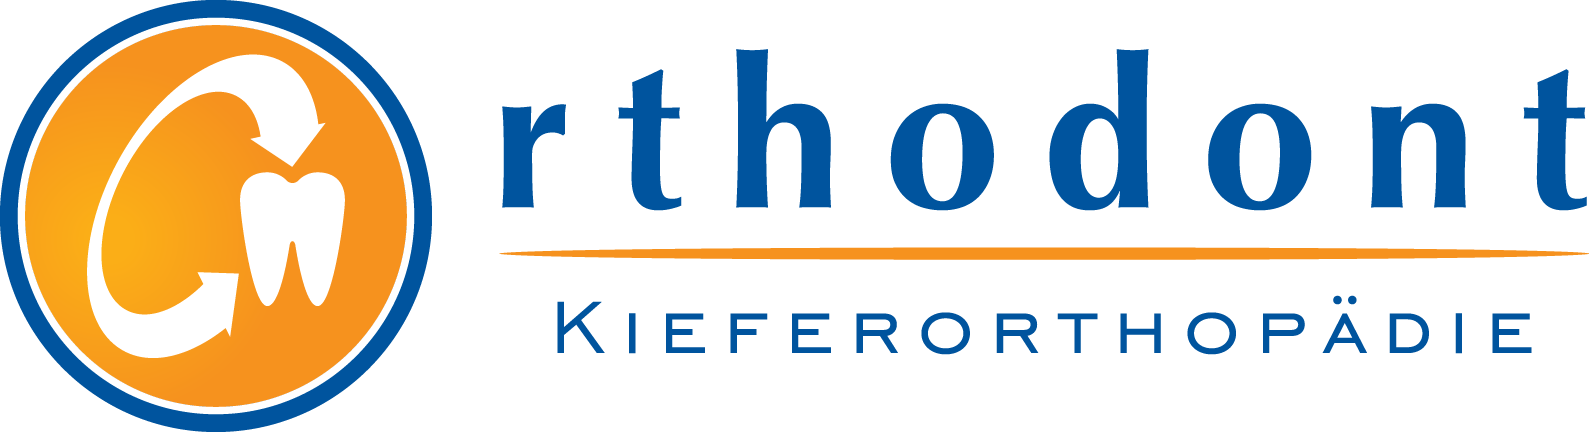 Orthodont Kieferorthopadie